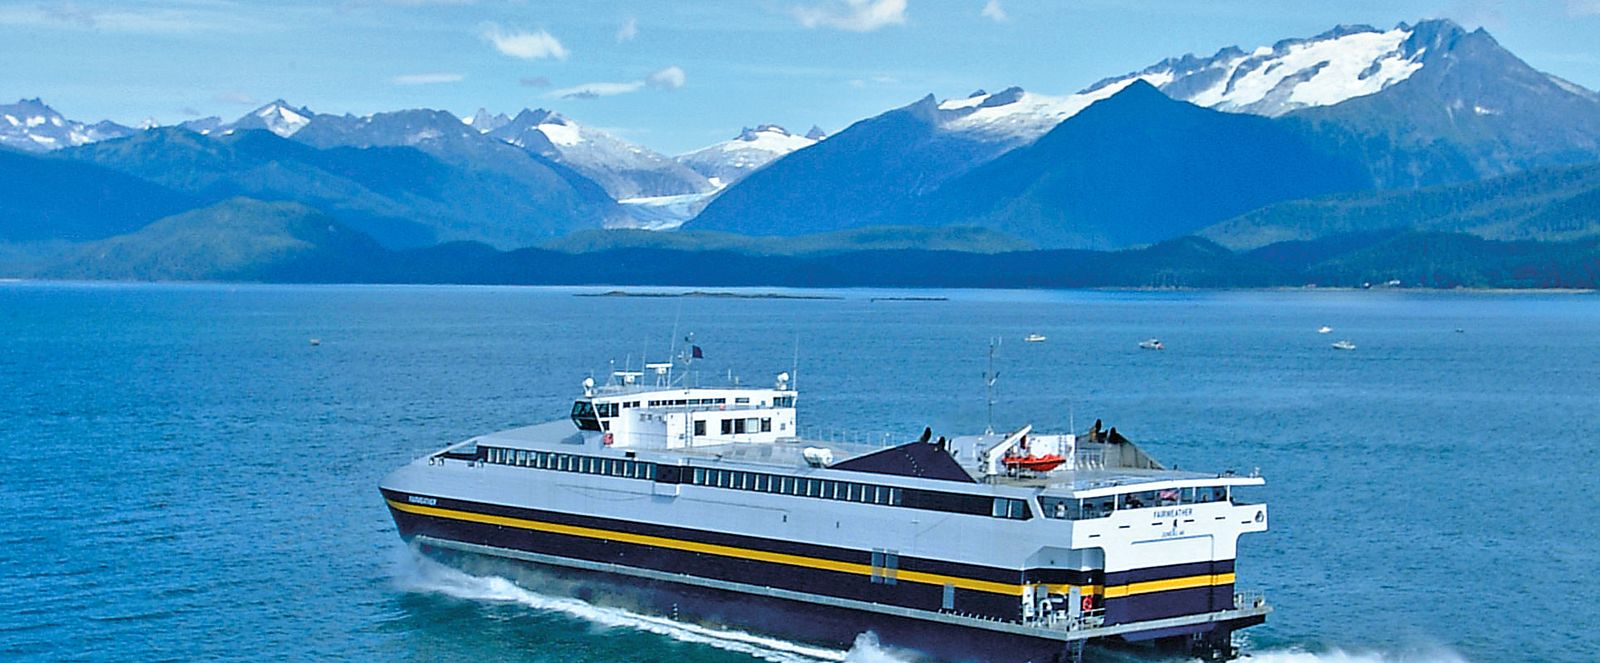 Schiff von Alaska Ferry